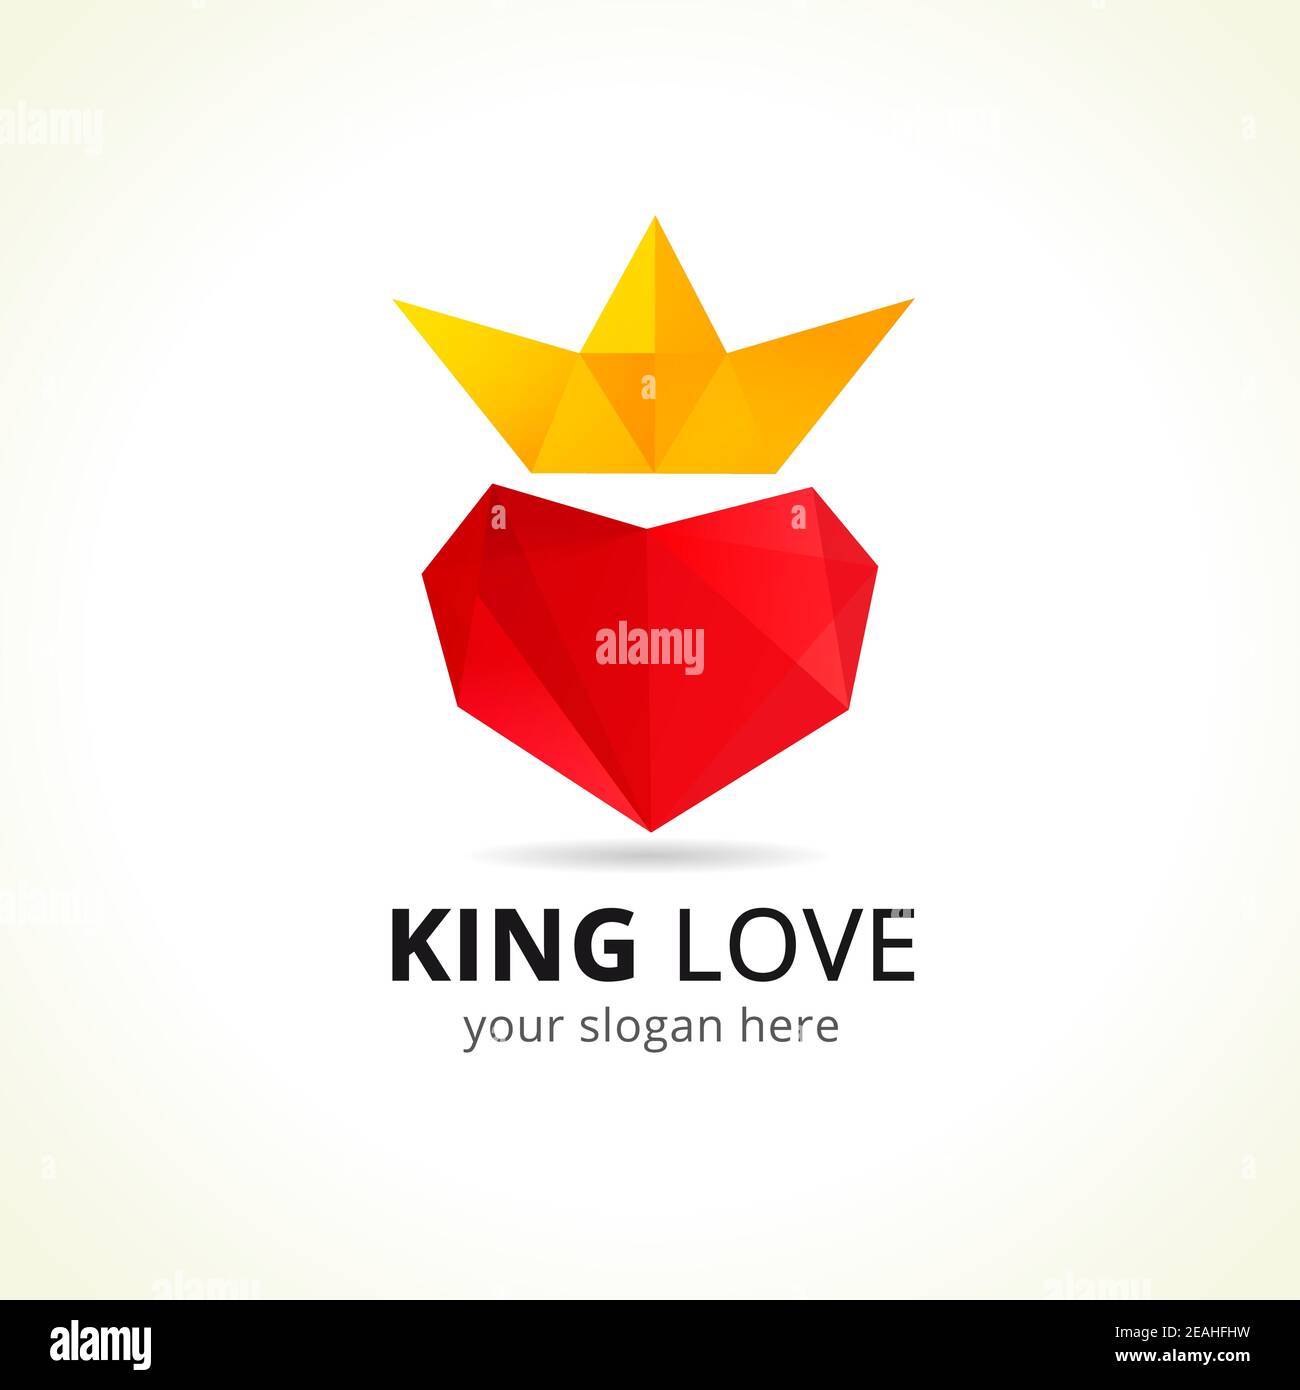 Concetto di logo vettoriale King of Love. Simbolo creativo per il business dell'intrattenimento. Cuore e corona, colore rosso e giallo. Icona di celebrazione. Astratto isolato Illustrazione Vettoriale